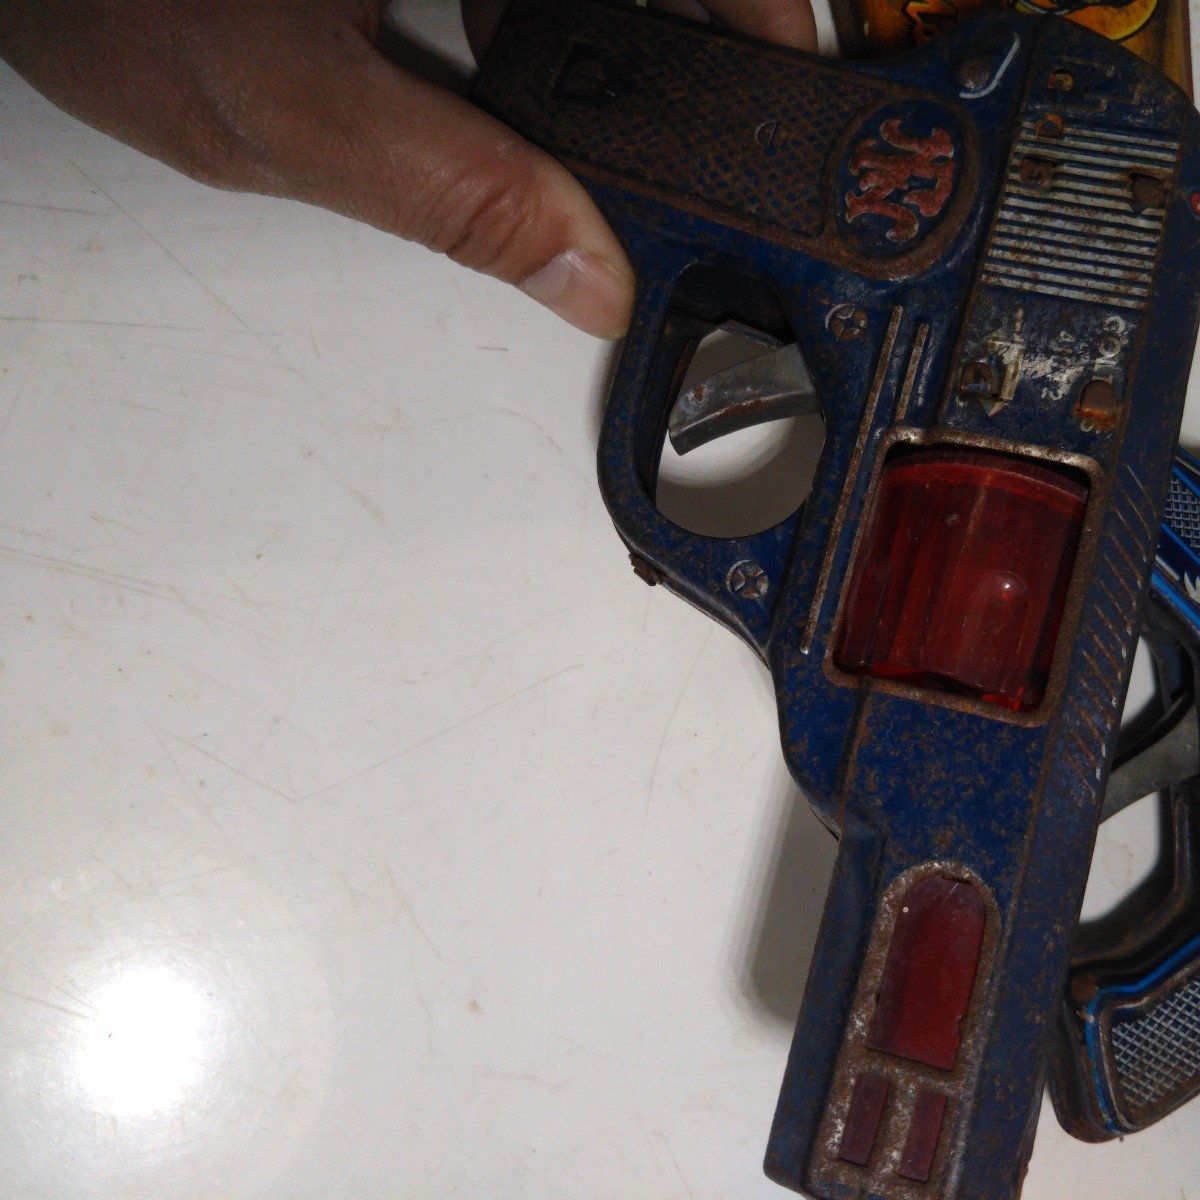  Showa Retro подлинная вещь жестяная пластина товар ружье продажа комплектом сделано в Японии украшение произведение искусства Junk 3 шт. комплект 